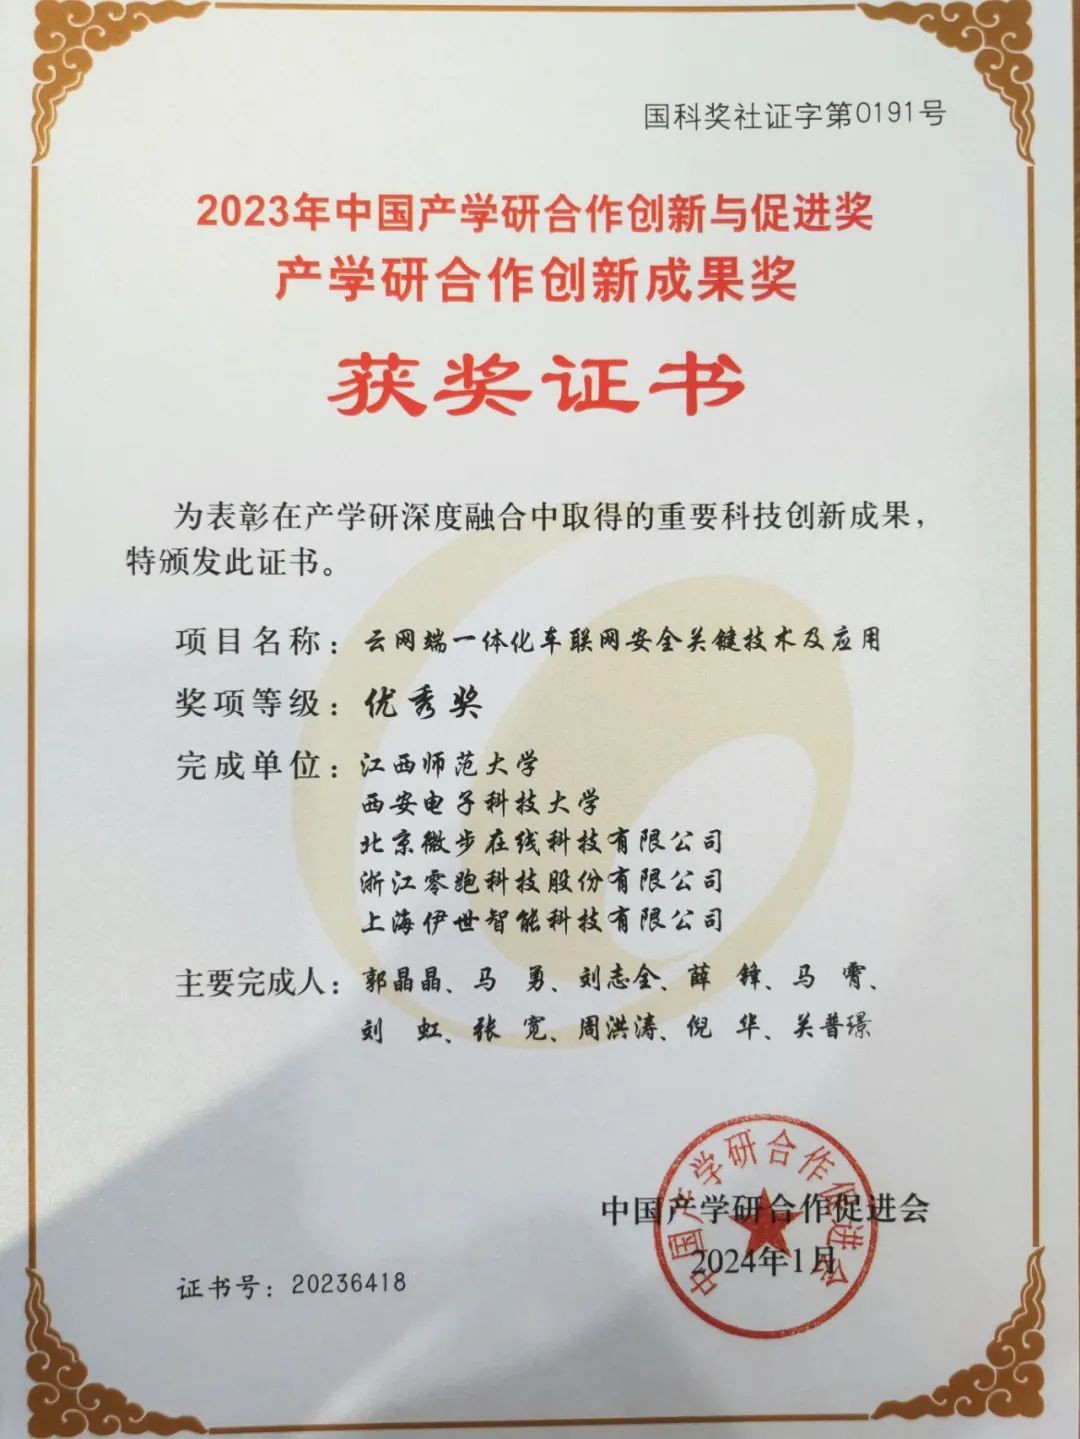 微步在线荣获“2023年中国产学研合作创新与促进奖”